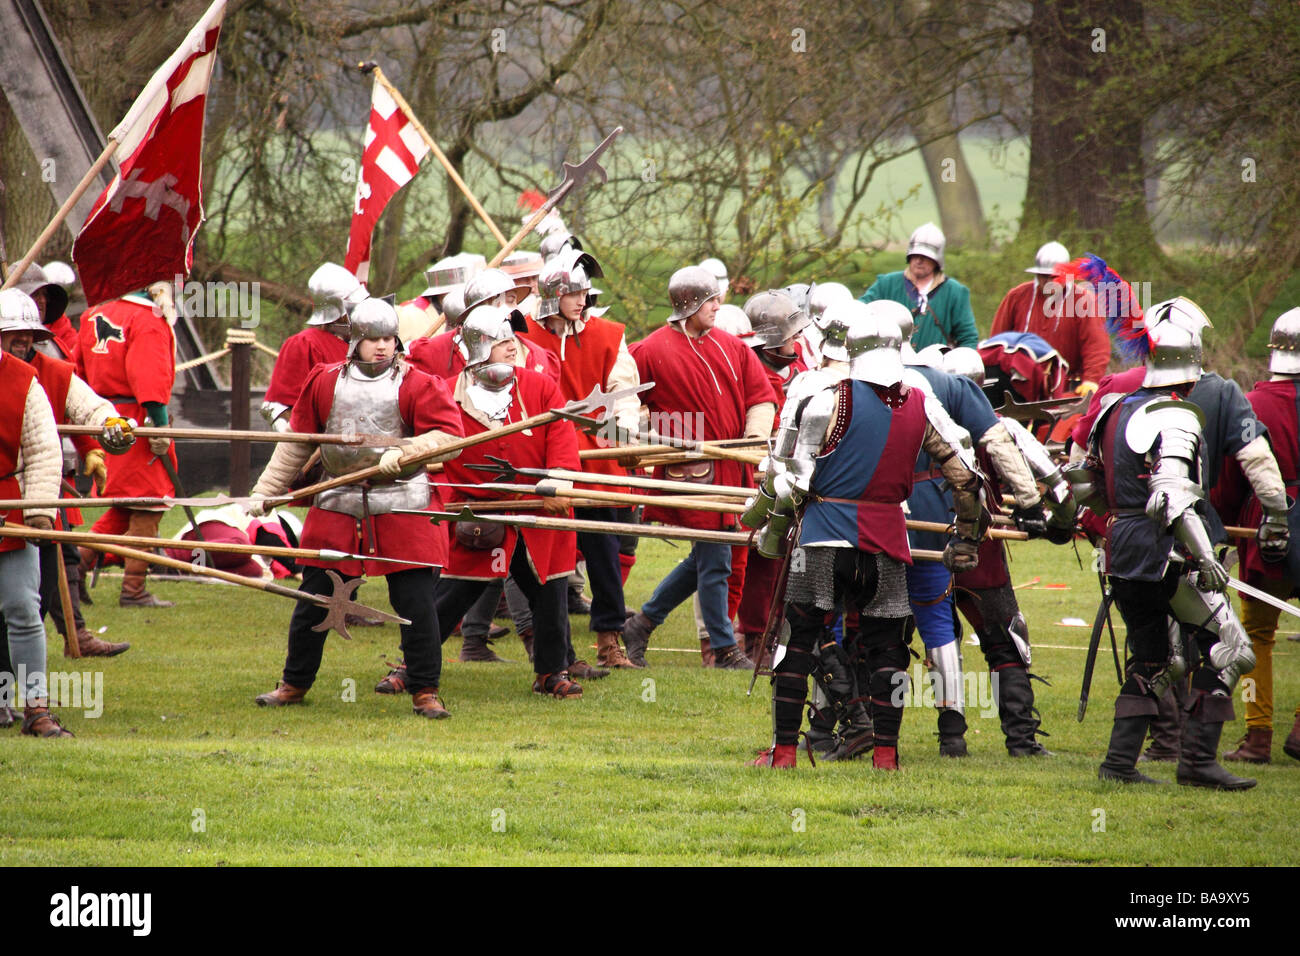 Rievocazione dell'assedio del castello di Warwick nel XV secolo con una battaglia tra la yorkists e lancastrians Foto Stock